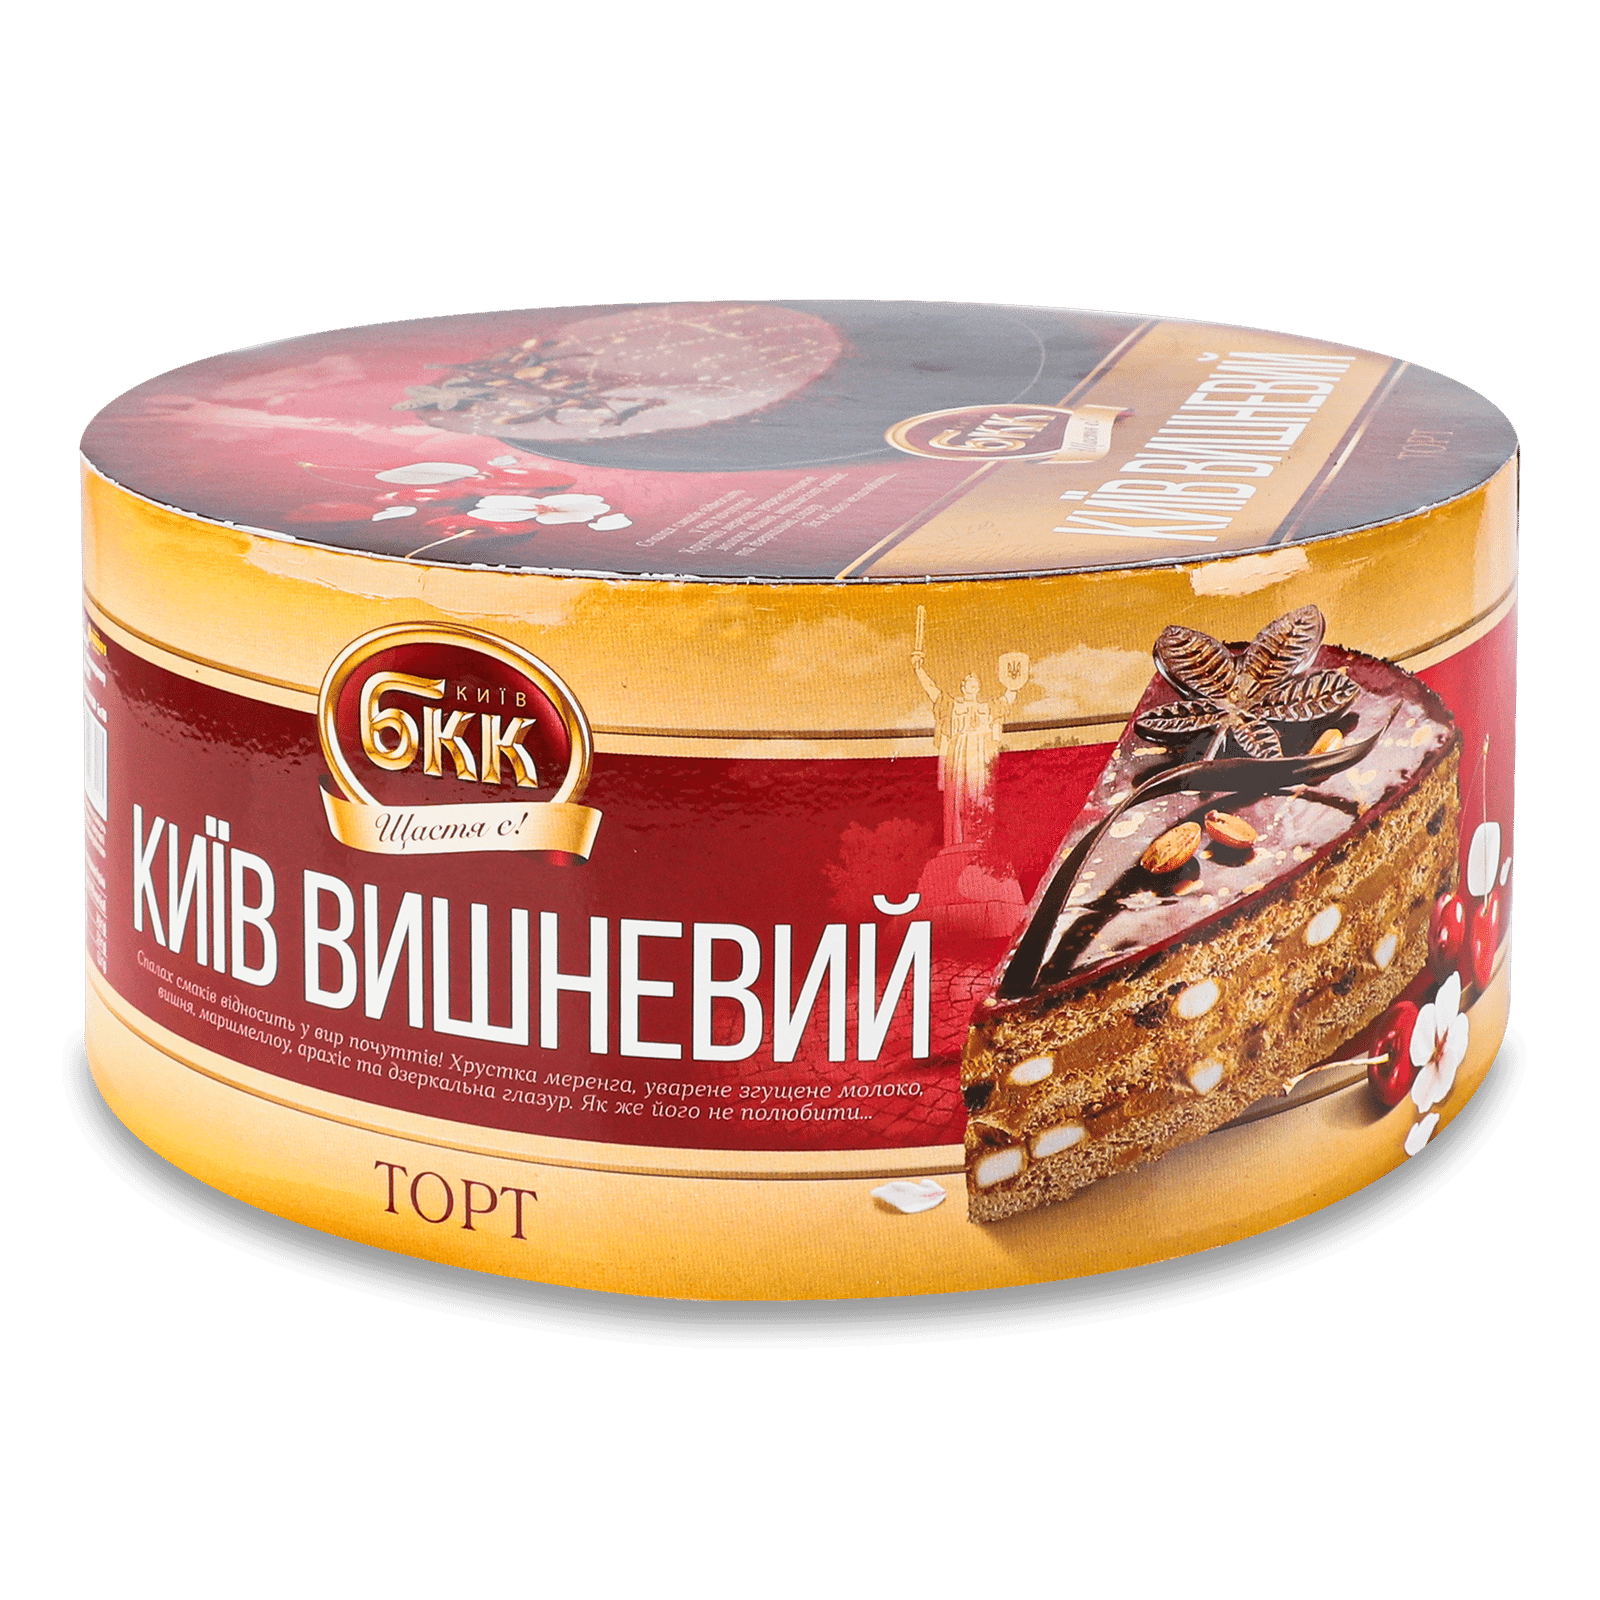 Торт БКК Київ вишневий - 1